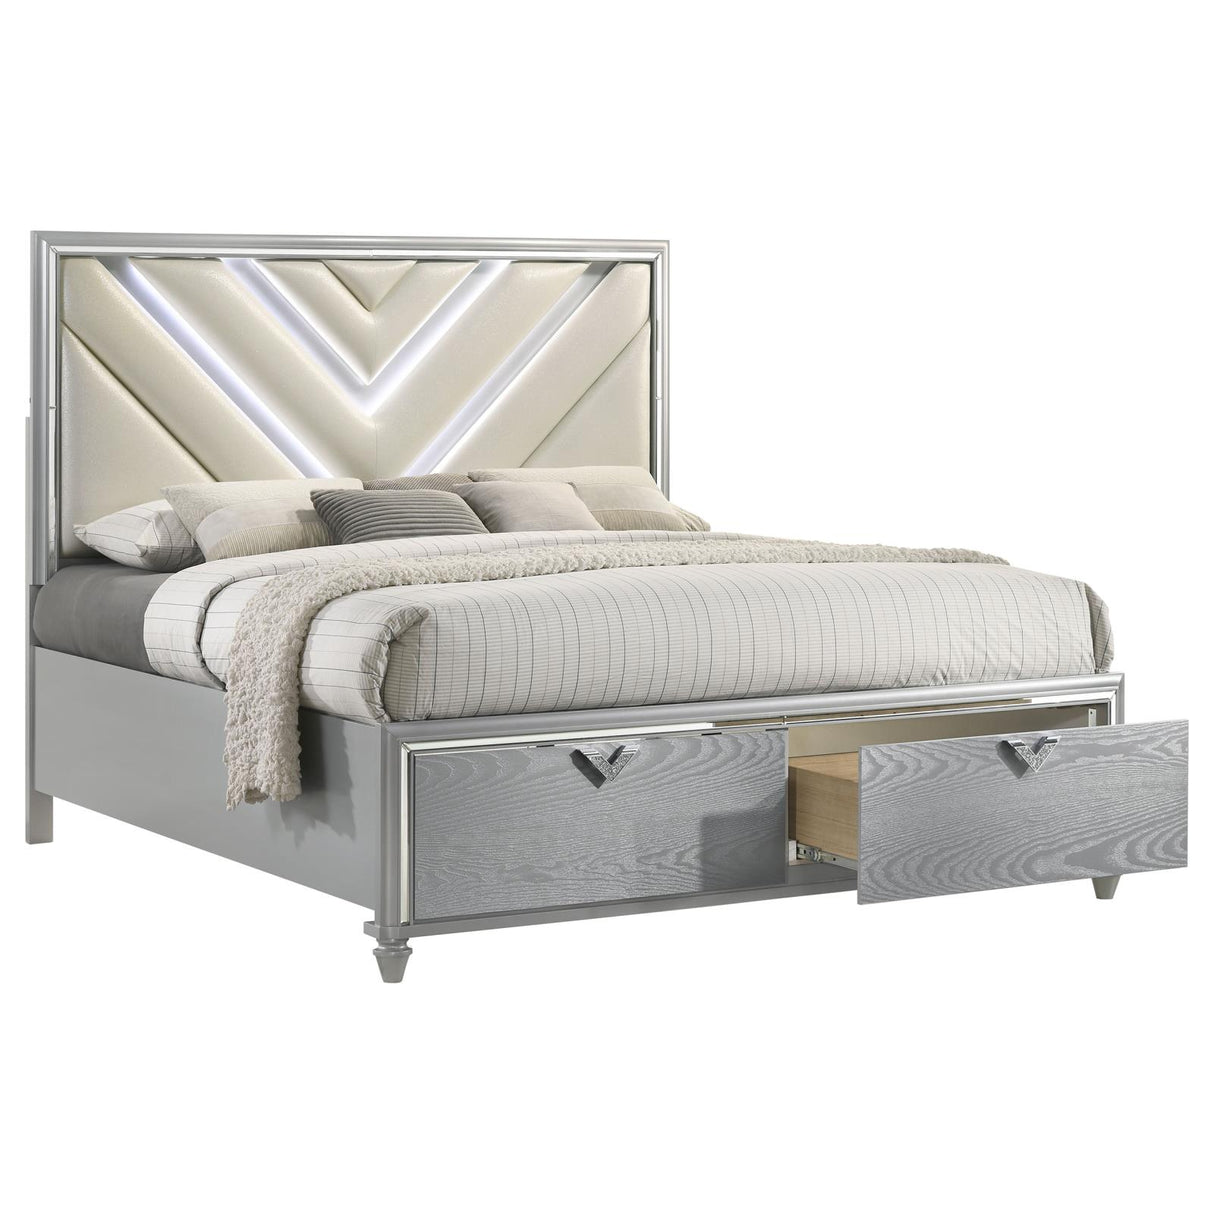 Veronica Eastern King Platform Storage Bed with Upholstered LED Headboard Light Silver - 224721KE - Luna Furniture